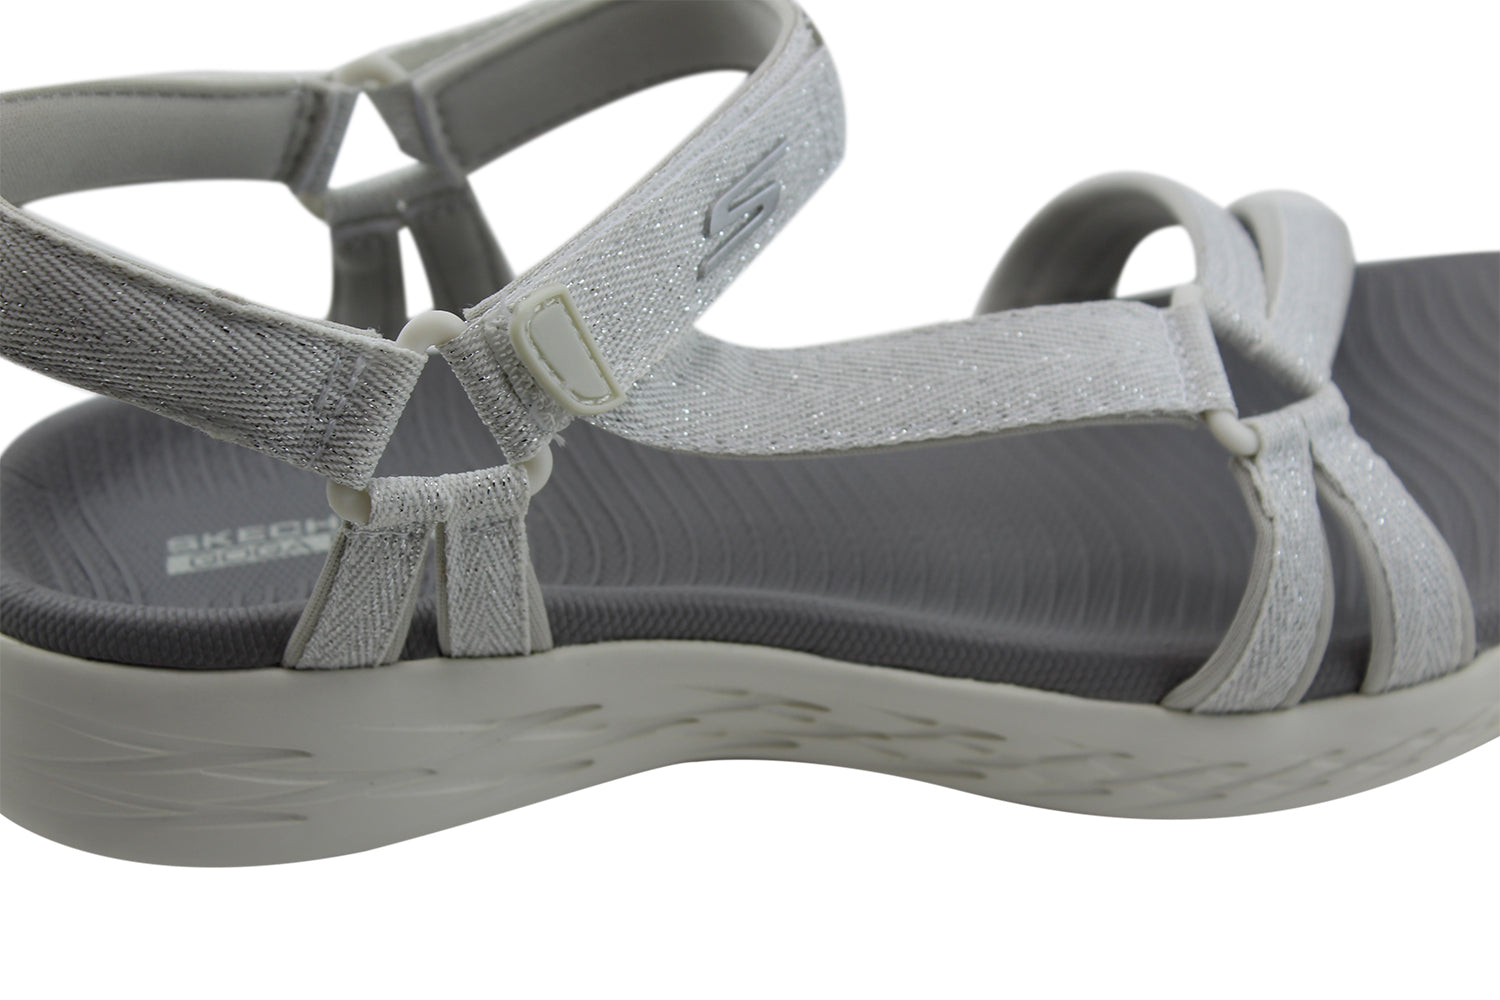 Skechers Soiree Silver Womens Sandal